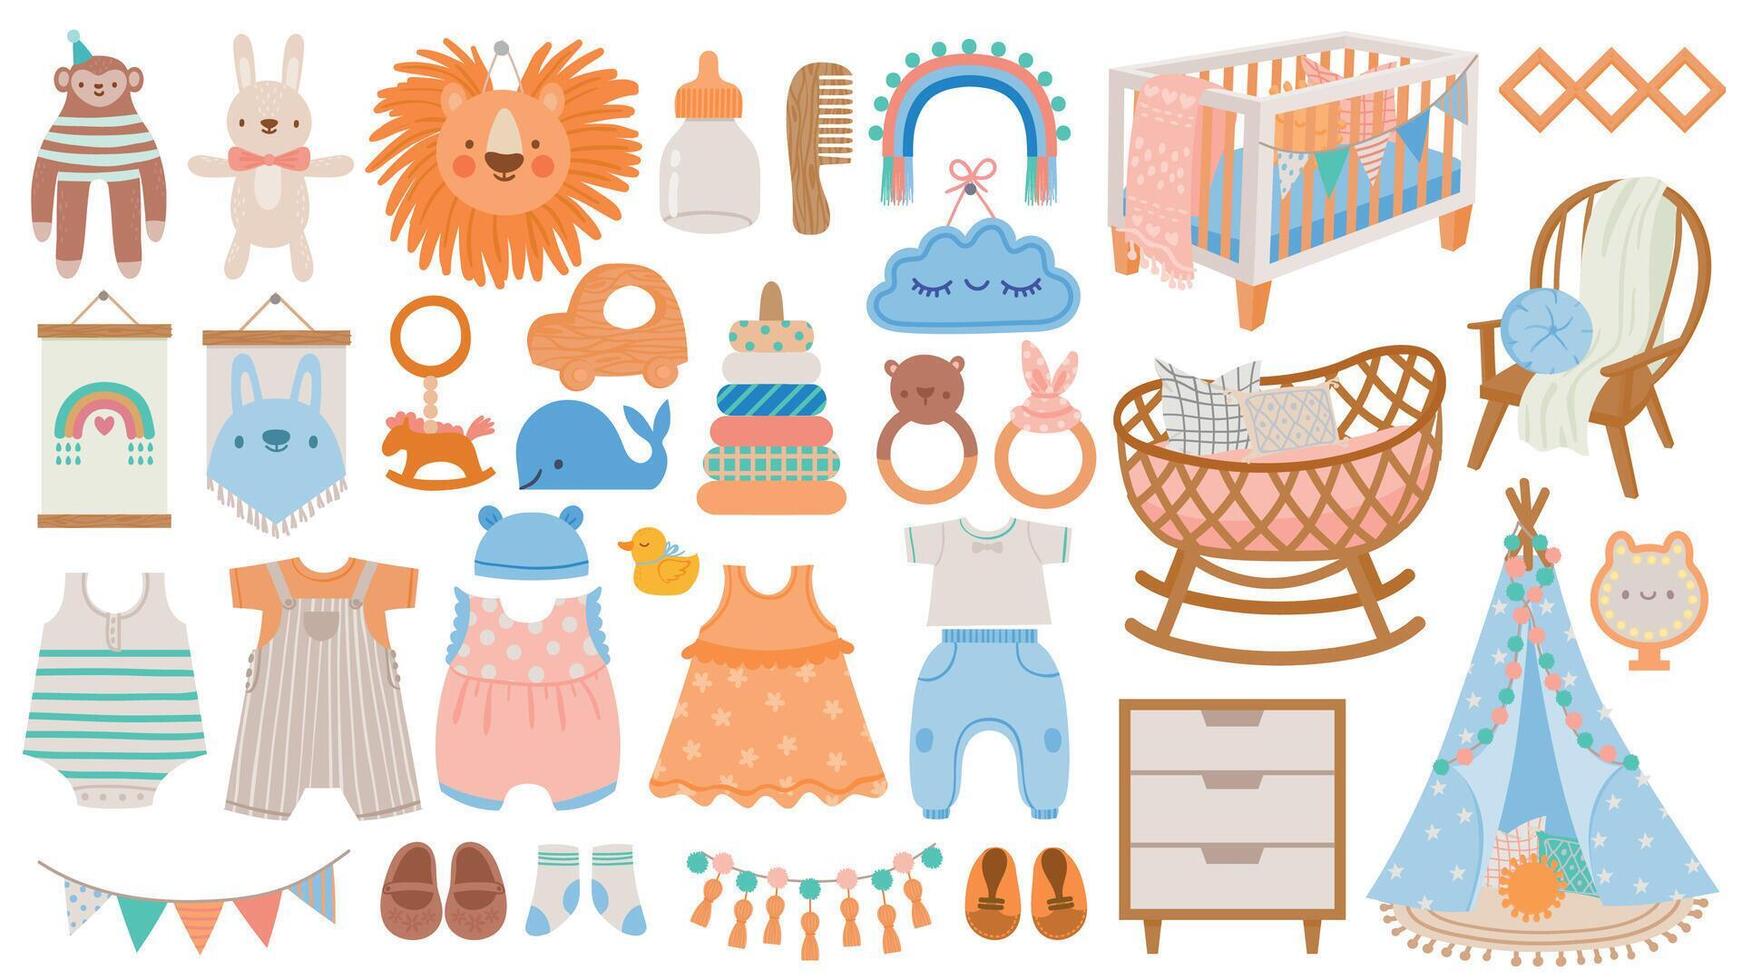 bébé meubles et vêtements. garderie éléments, animal jouets, décor, des berceaux, hochets et nouveau née accessoires dans scandinave style vecteur ensemble